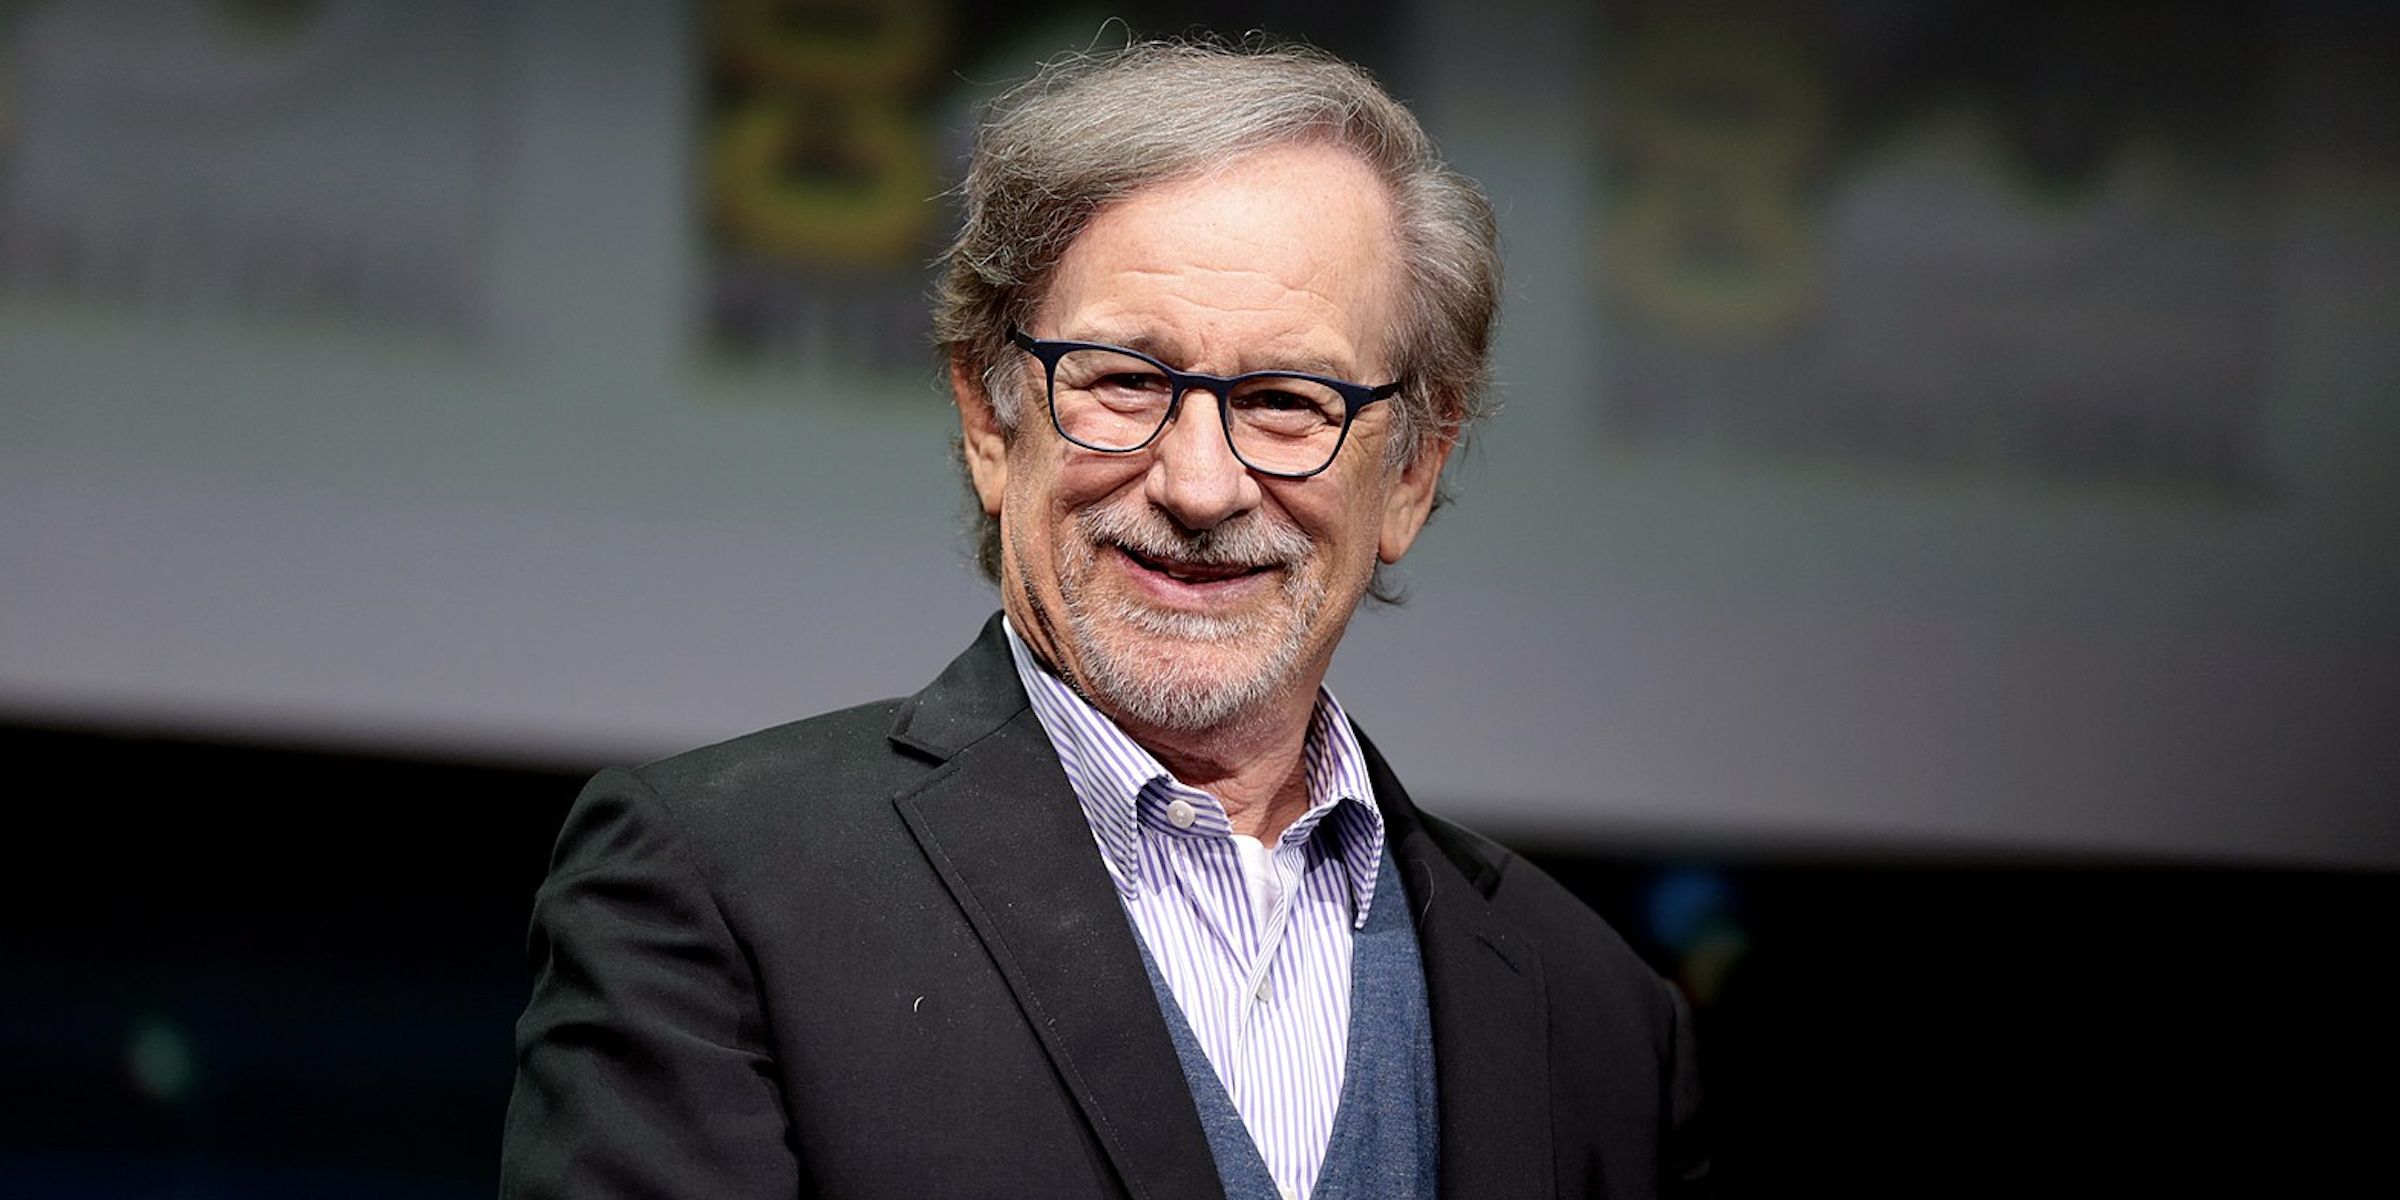 Steven Spielberg Labeled for Reuse